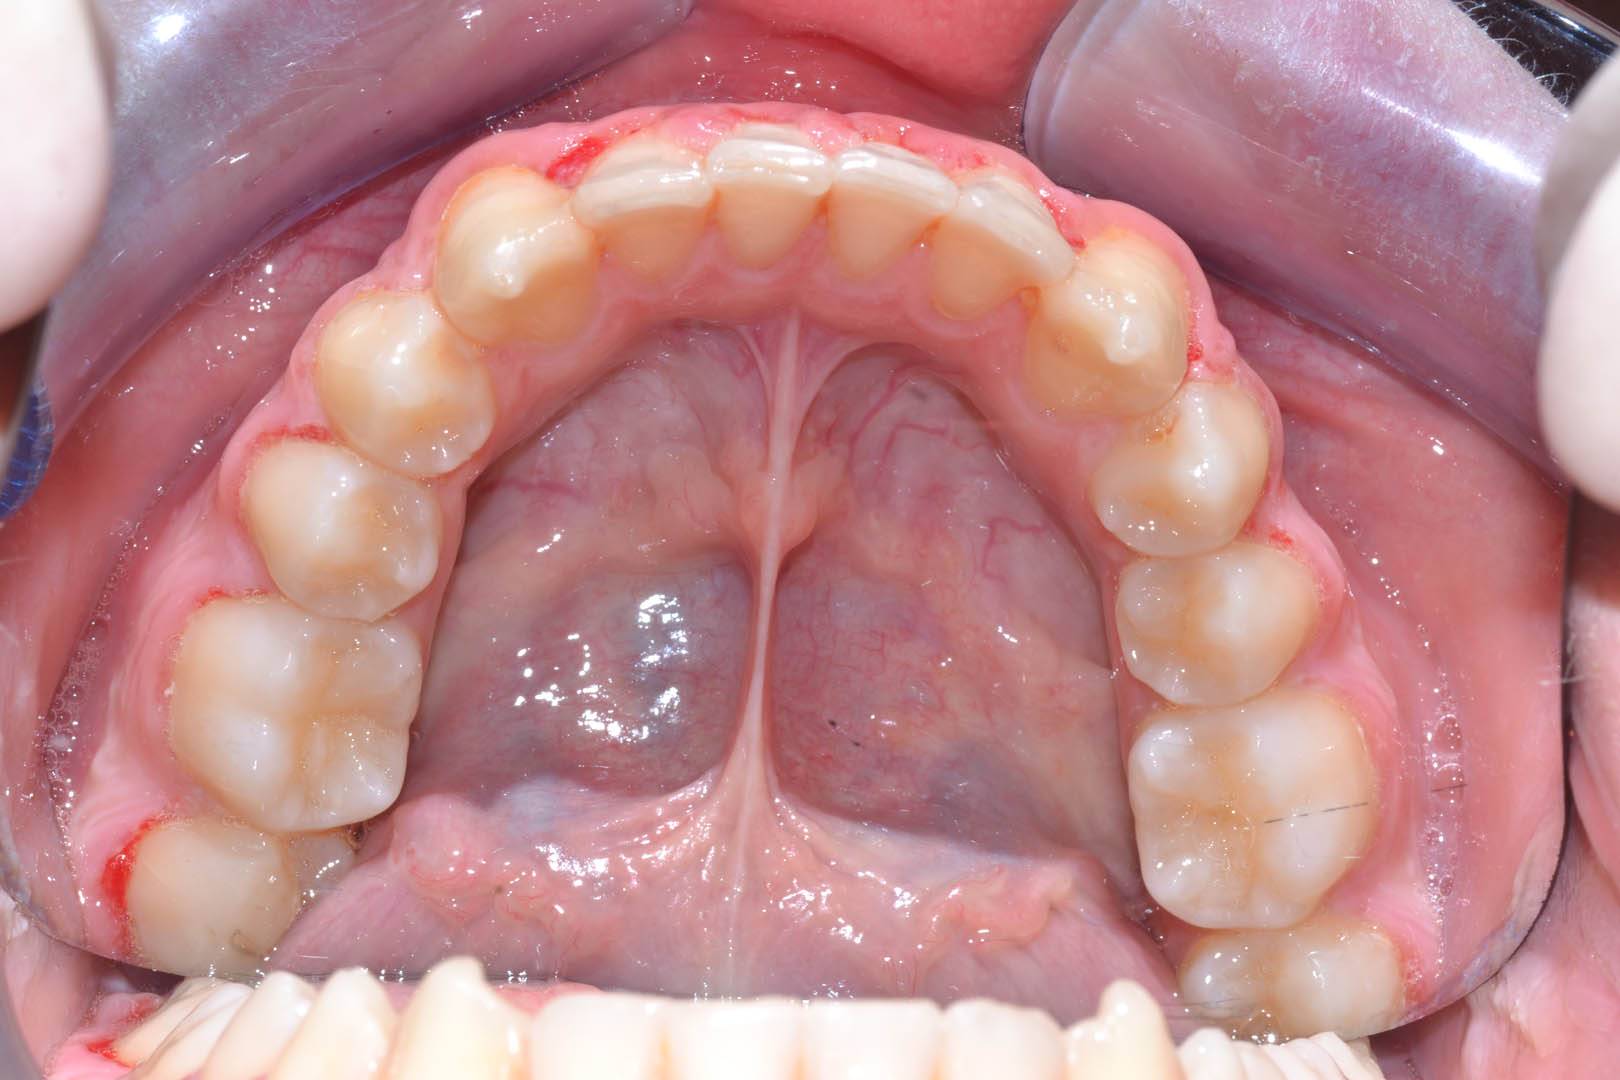 odontocentro-monza-brianza-casi-clinici-ortodonzia-bimascellare-20-mesi (12)